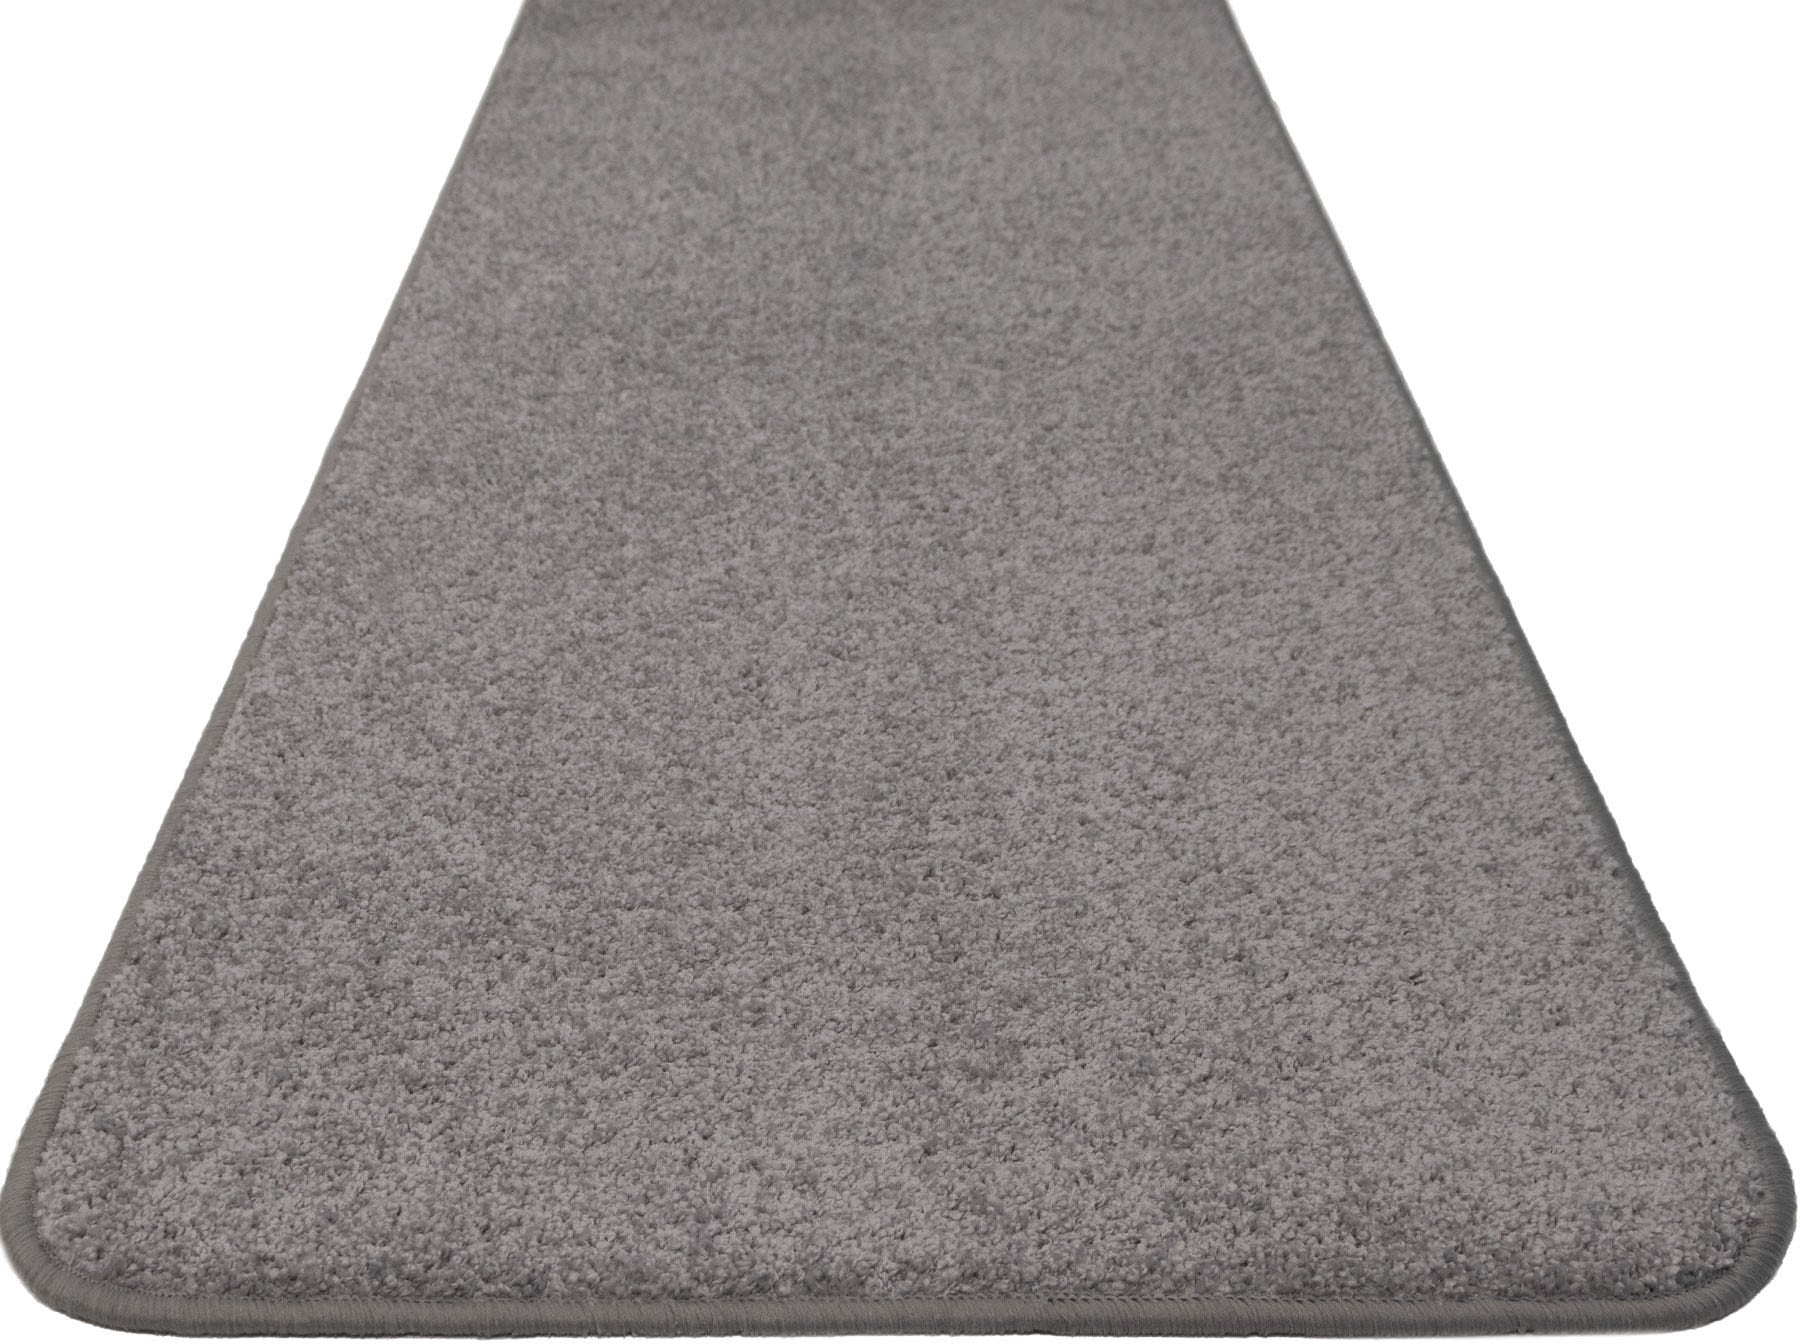 Primaflor Kurzflor-Teppich - Mumbai - Silber - 120x170 cm - Hochwertiger Teppich-Läufer für Wohnzimmer, Kinderzimmer und Flur - Pflegeleicht und Robust